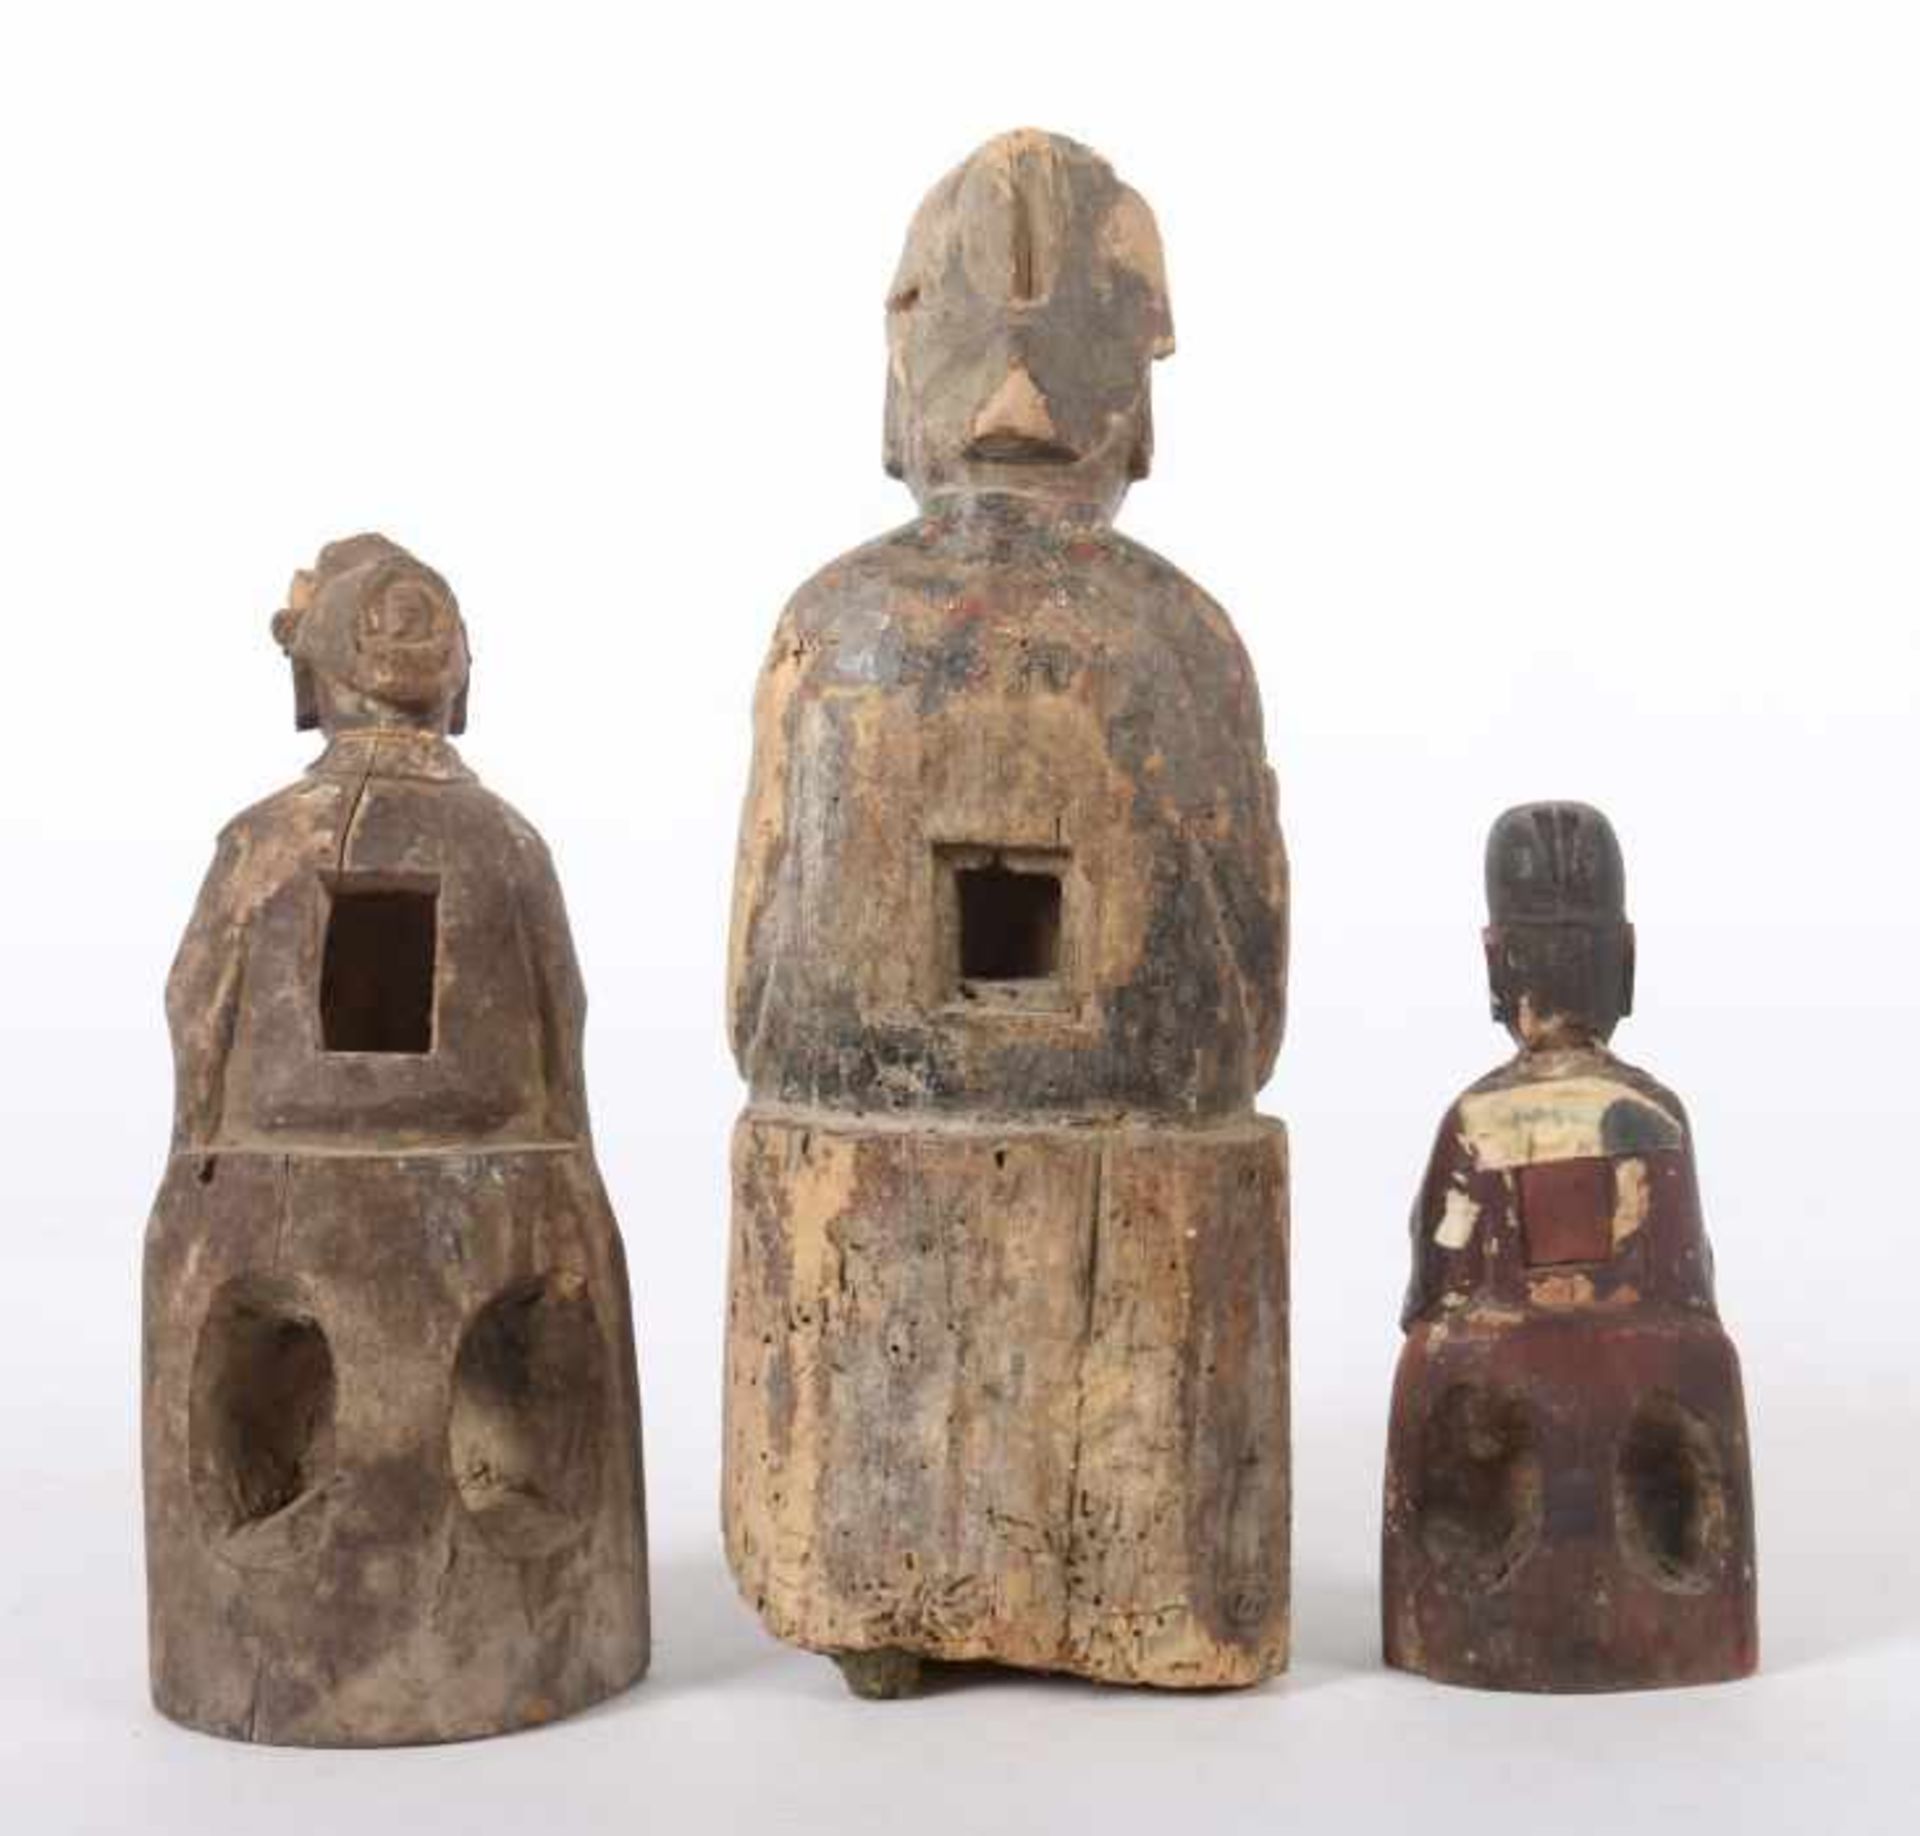 3 höfische FigurenChina, wohl 18./19. Jh., Holz/Reste einer Fassung, 3 vollplastische Schnitzereien, - Bild 2 aus 2